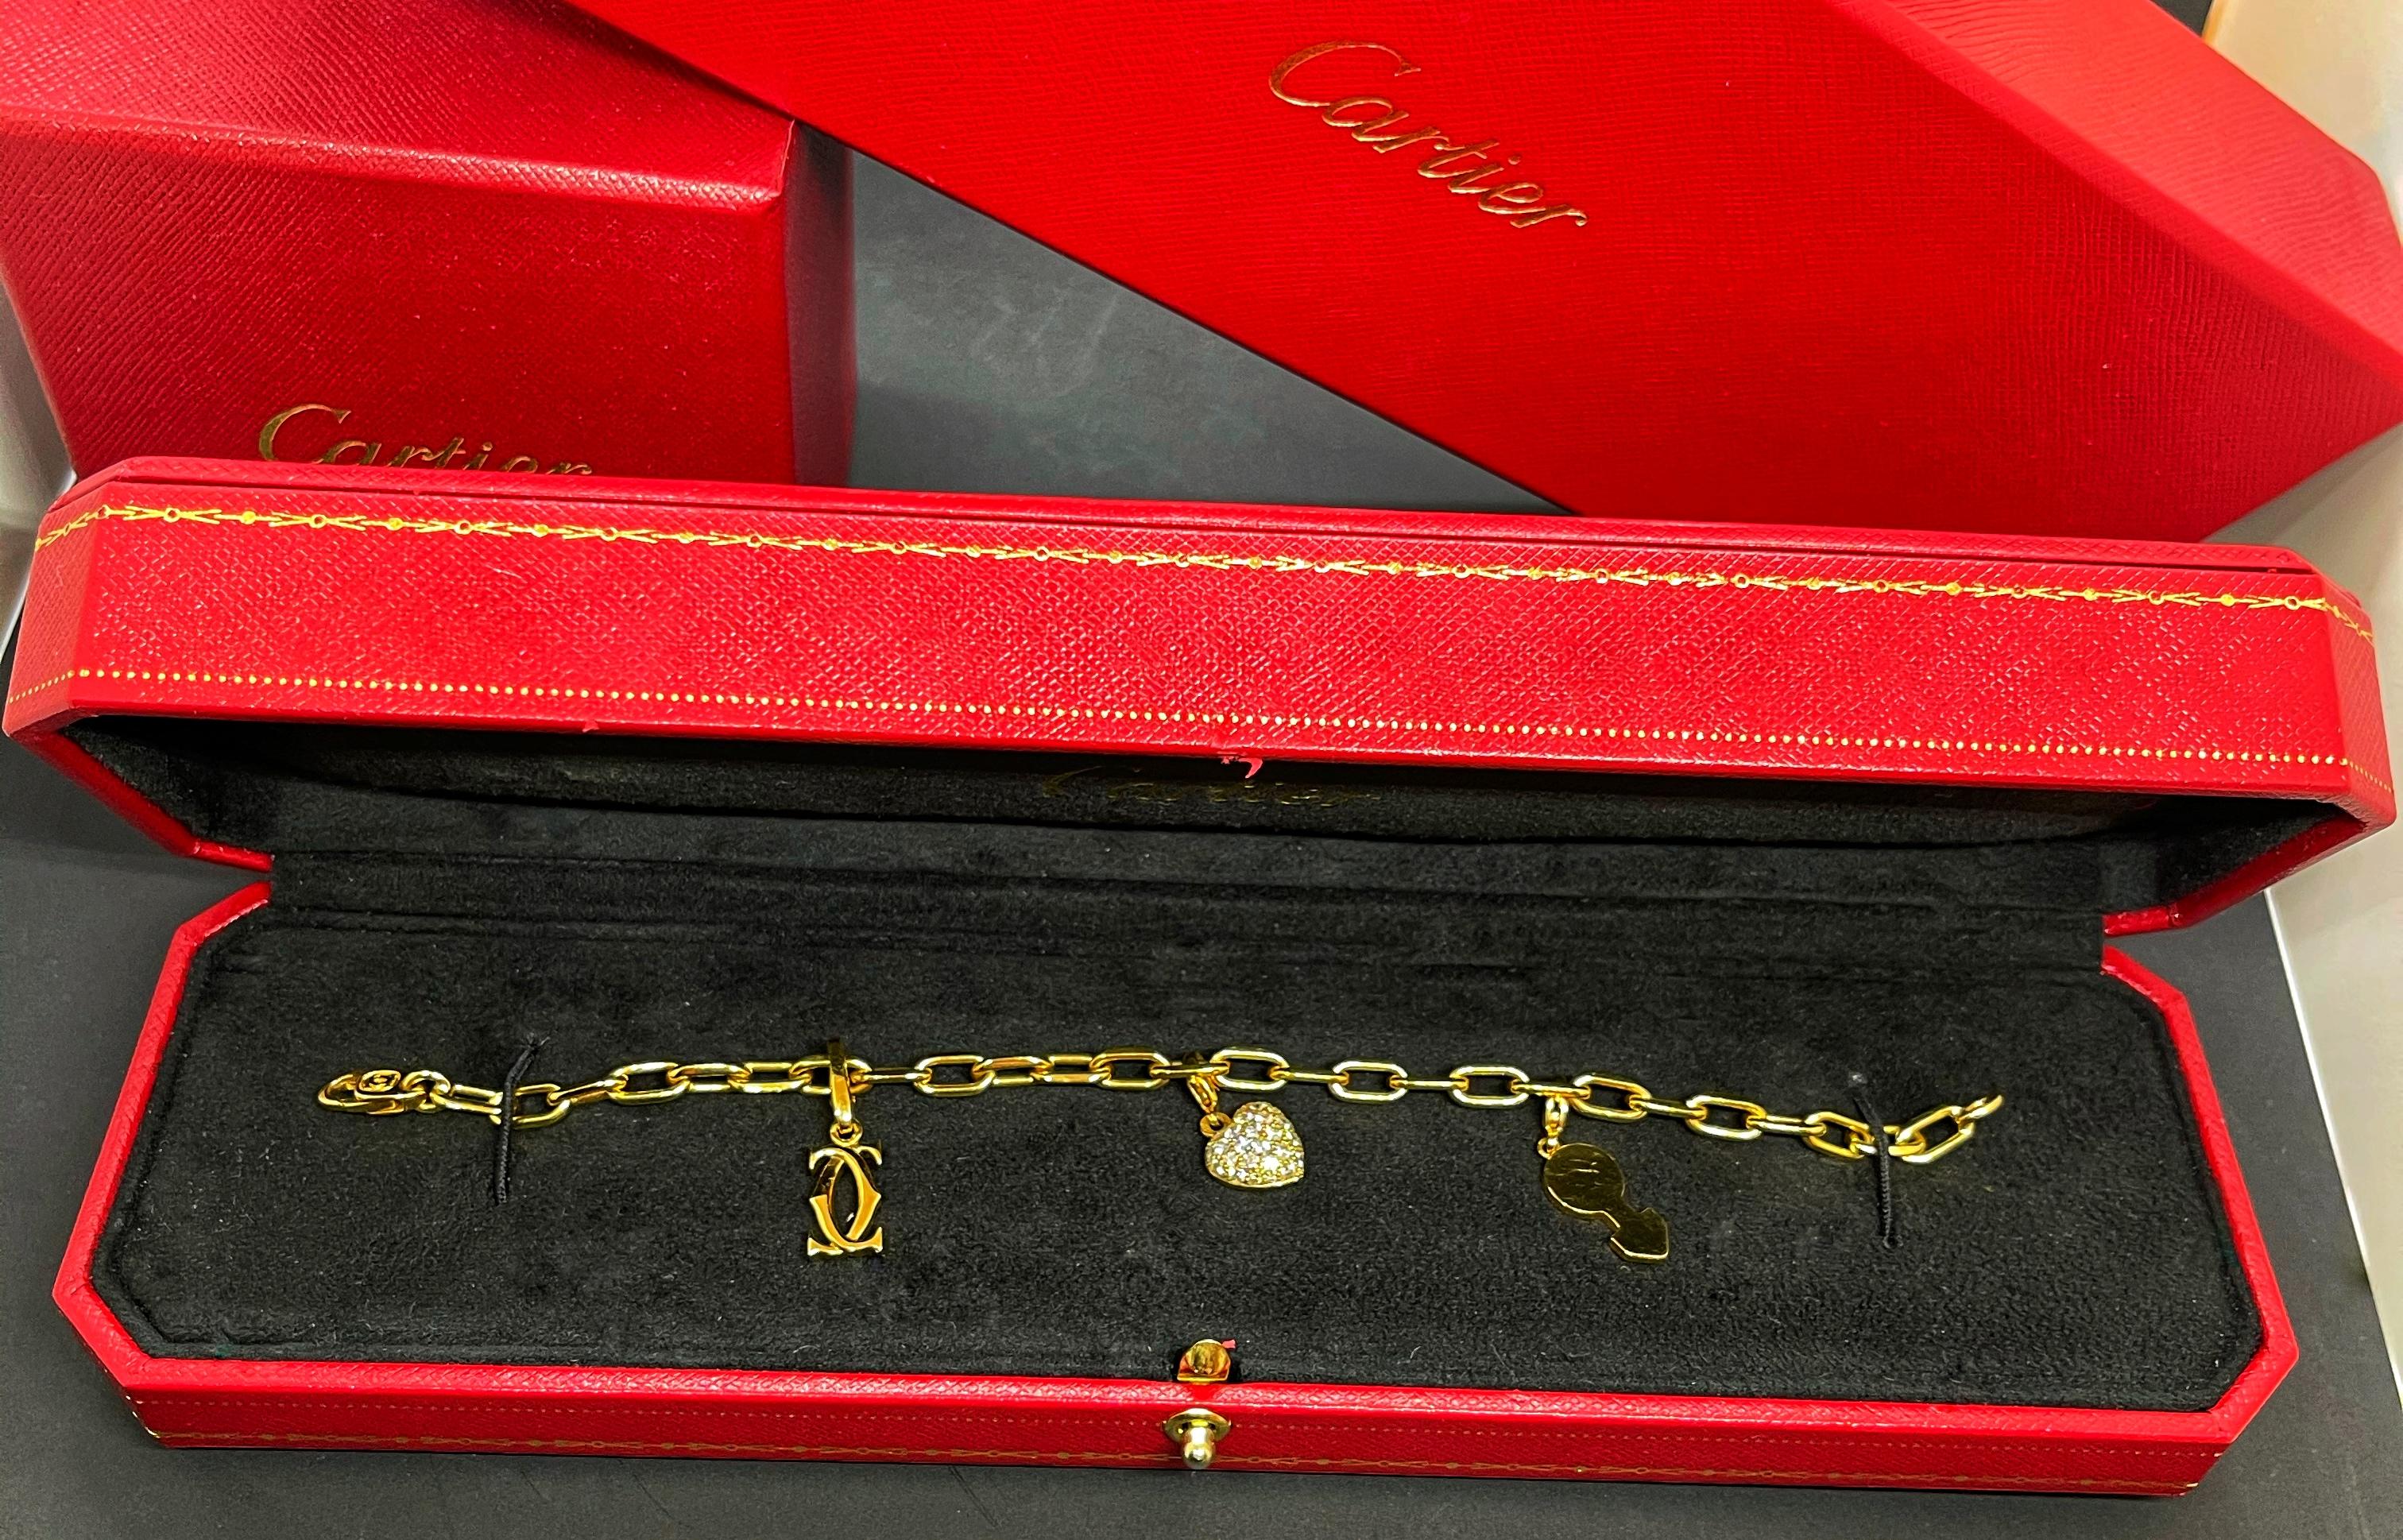 100% AUTHENTISCH schönes Cartier Charm Armband

Das stämmige Armband aus 18 Karat Gold wurde vom legendären französischen Schmuckhaus Cartier entworfen. Das mit drei Charms verzierte Armband repräsentiert die ikonischen Bilder, die mit Cartier